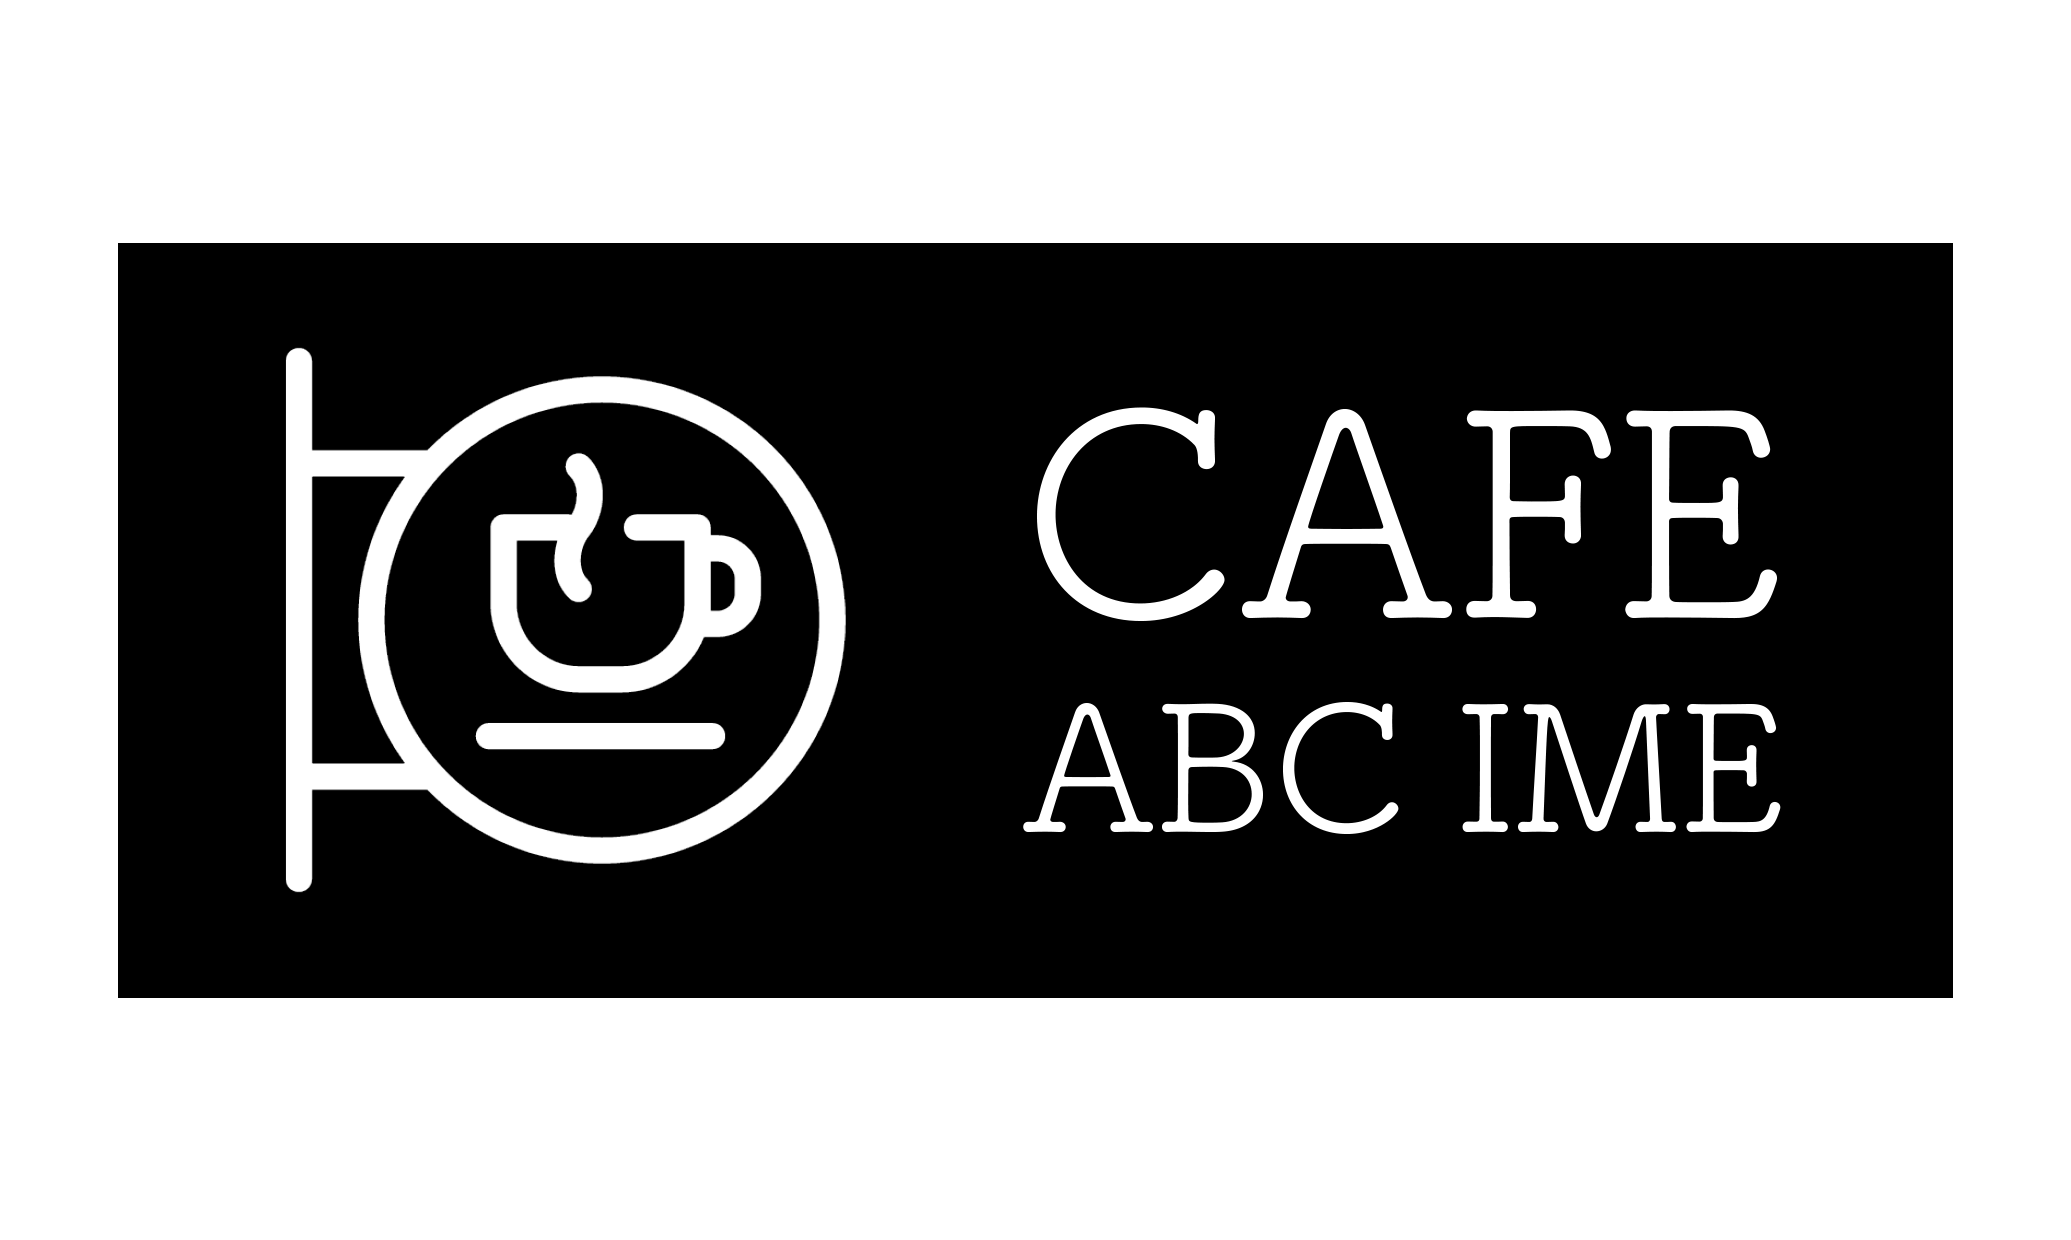 ABC_IME-Logo